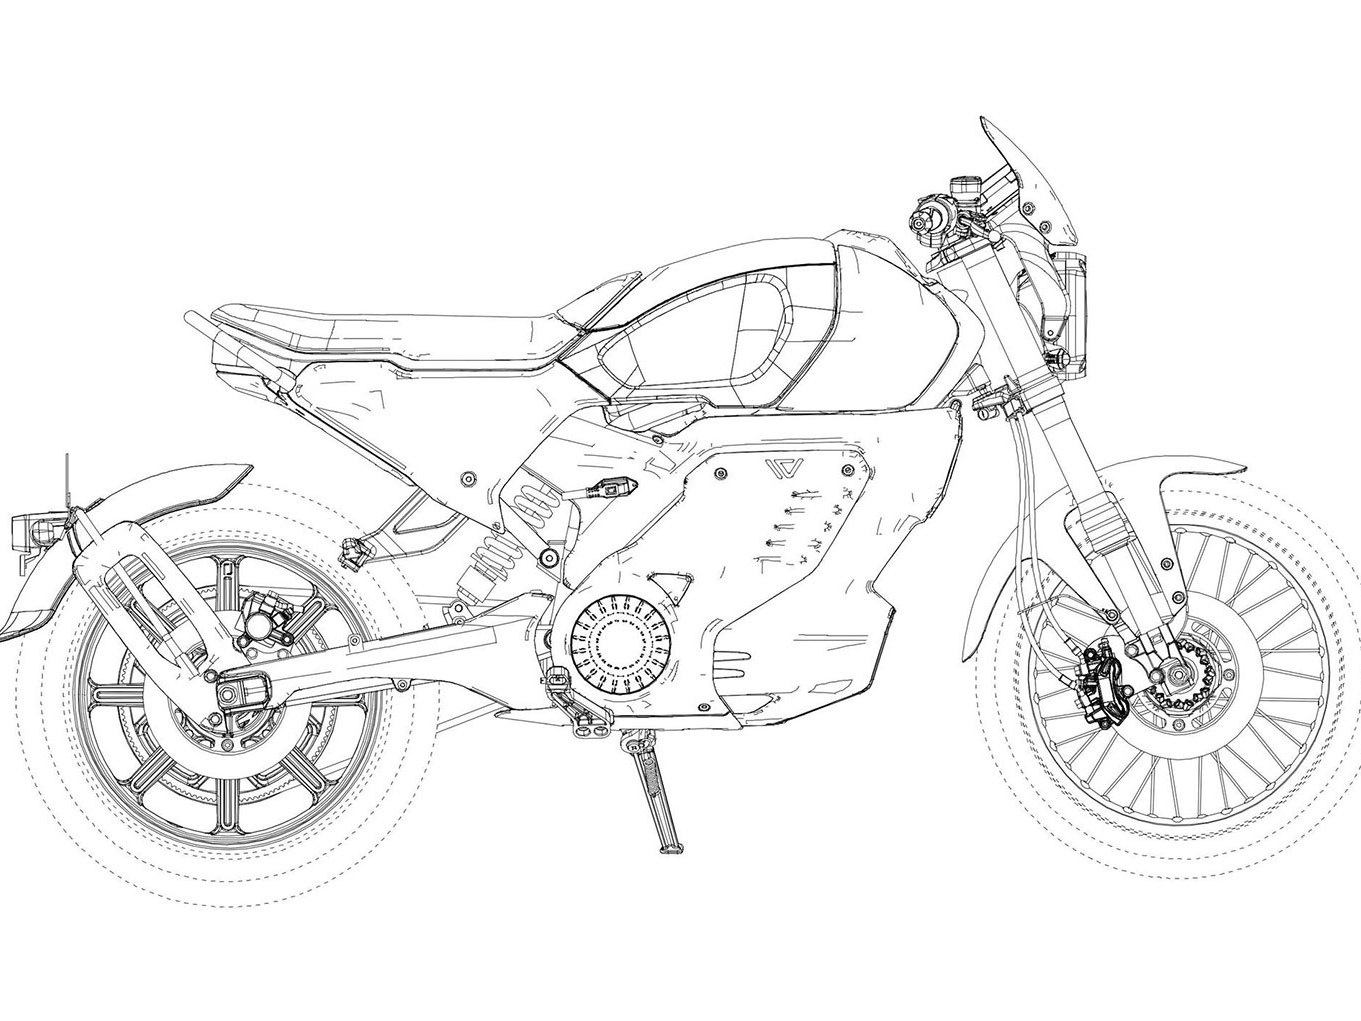 Electric Triumph - concept sketch - EvNerds